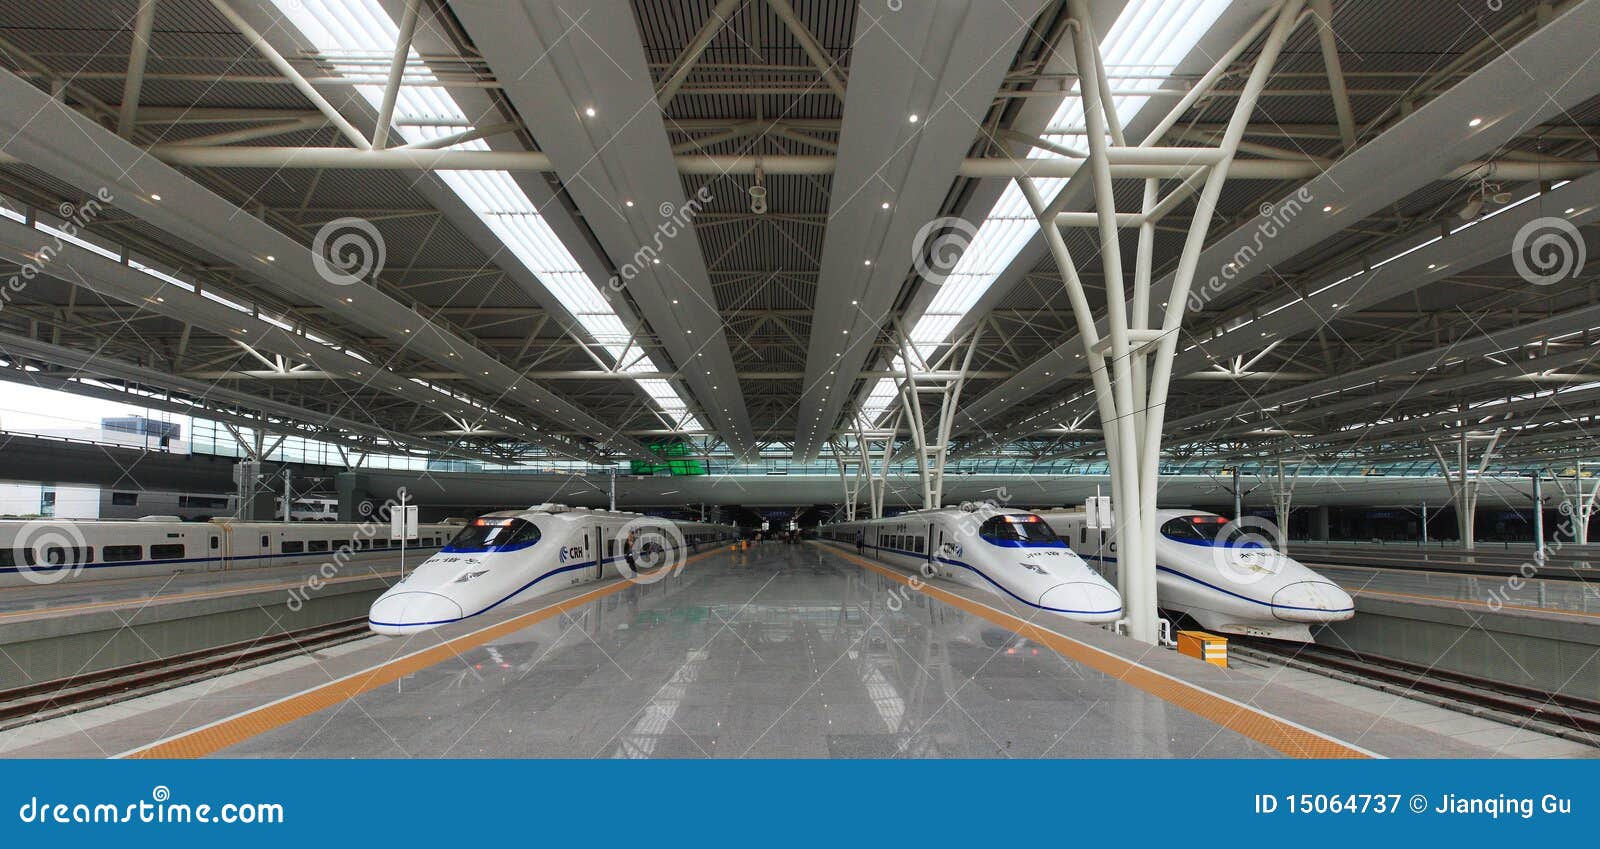 Yuk lihat transportasi di kota Shanghai (MRT Maglev + Stasiun terbesar di Asia)